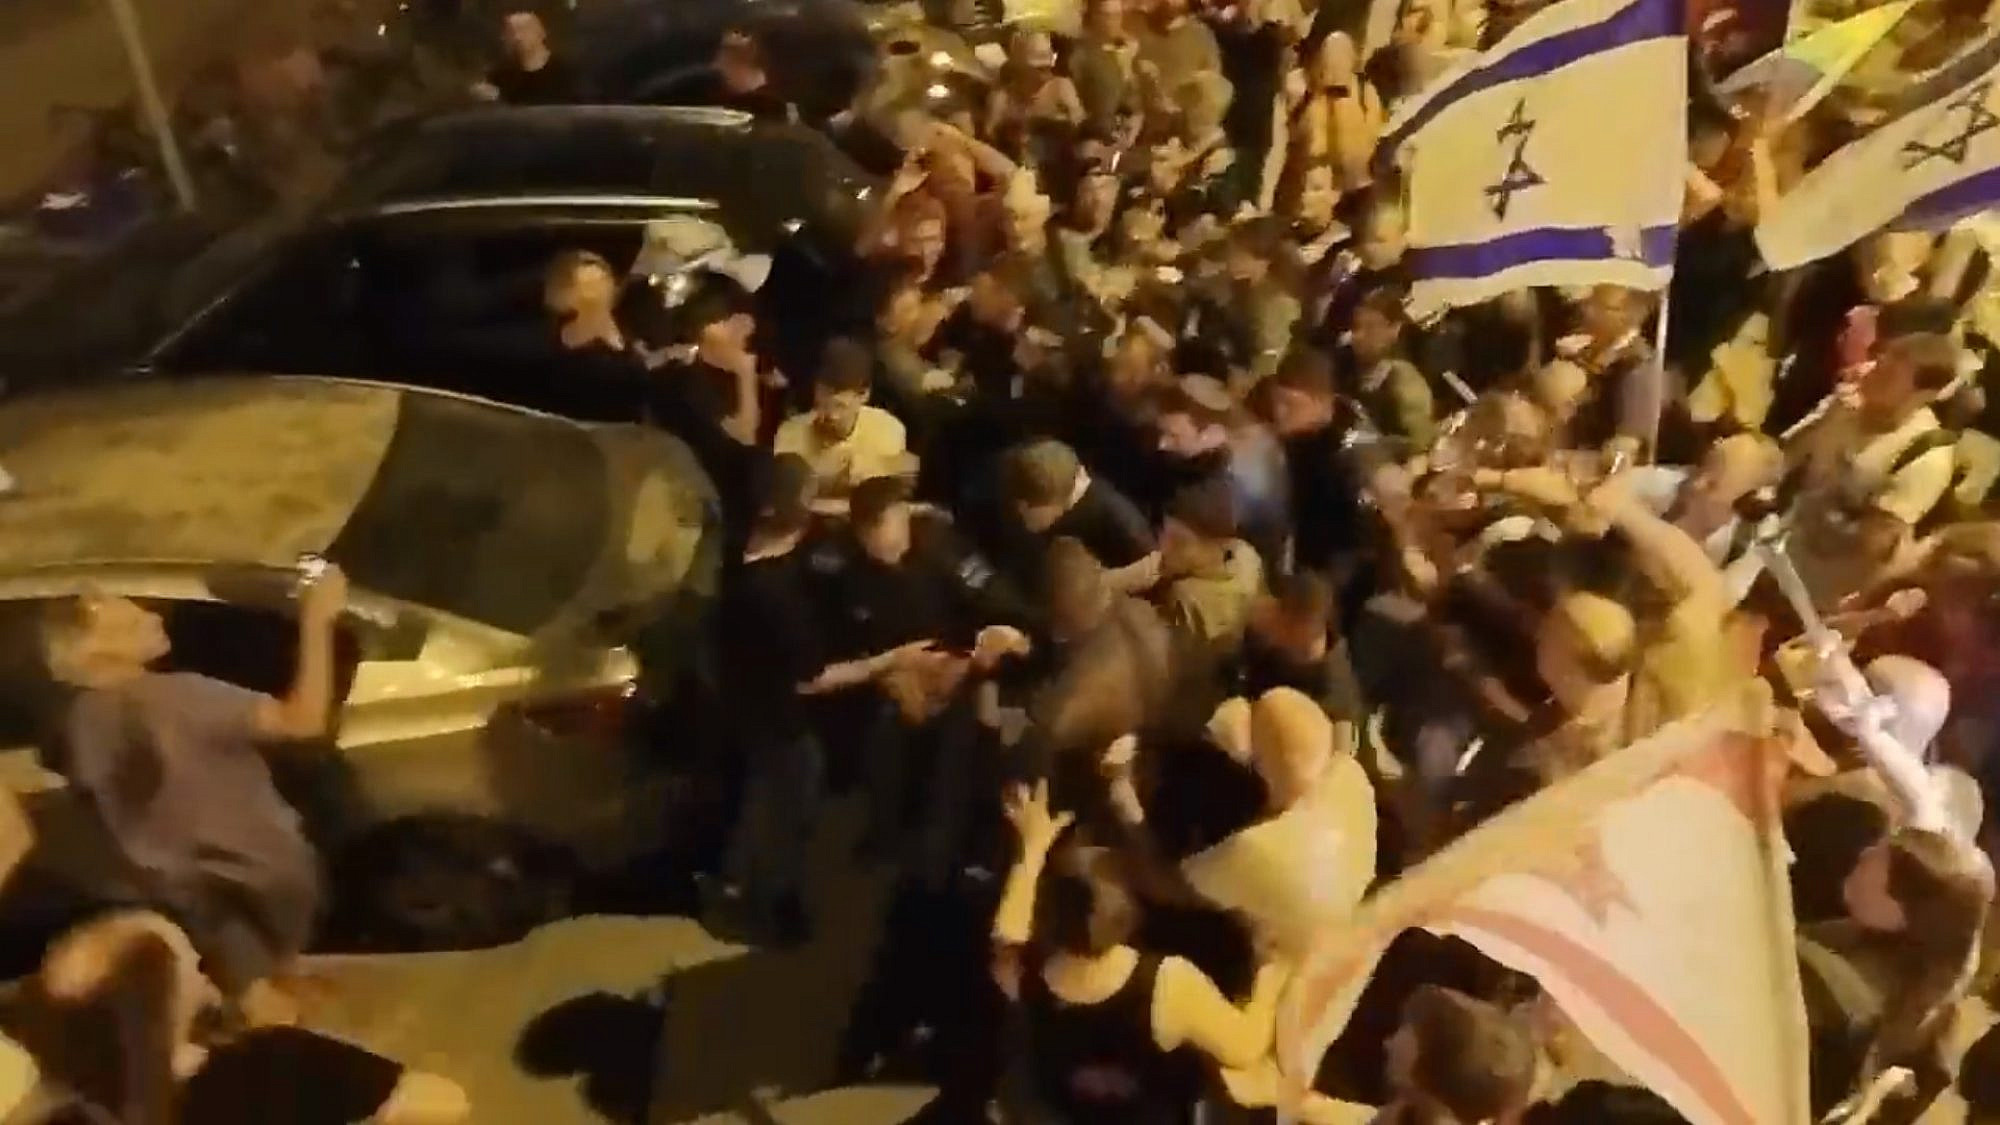 ההפגנה נגד יגאל לוינשטיין ו"בראש יהודי" (צילום מסך: מתוך צילומי הרחפן של שב"פ/ @Sha_b_p)